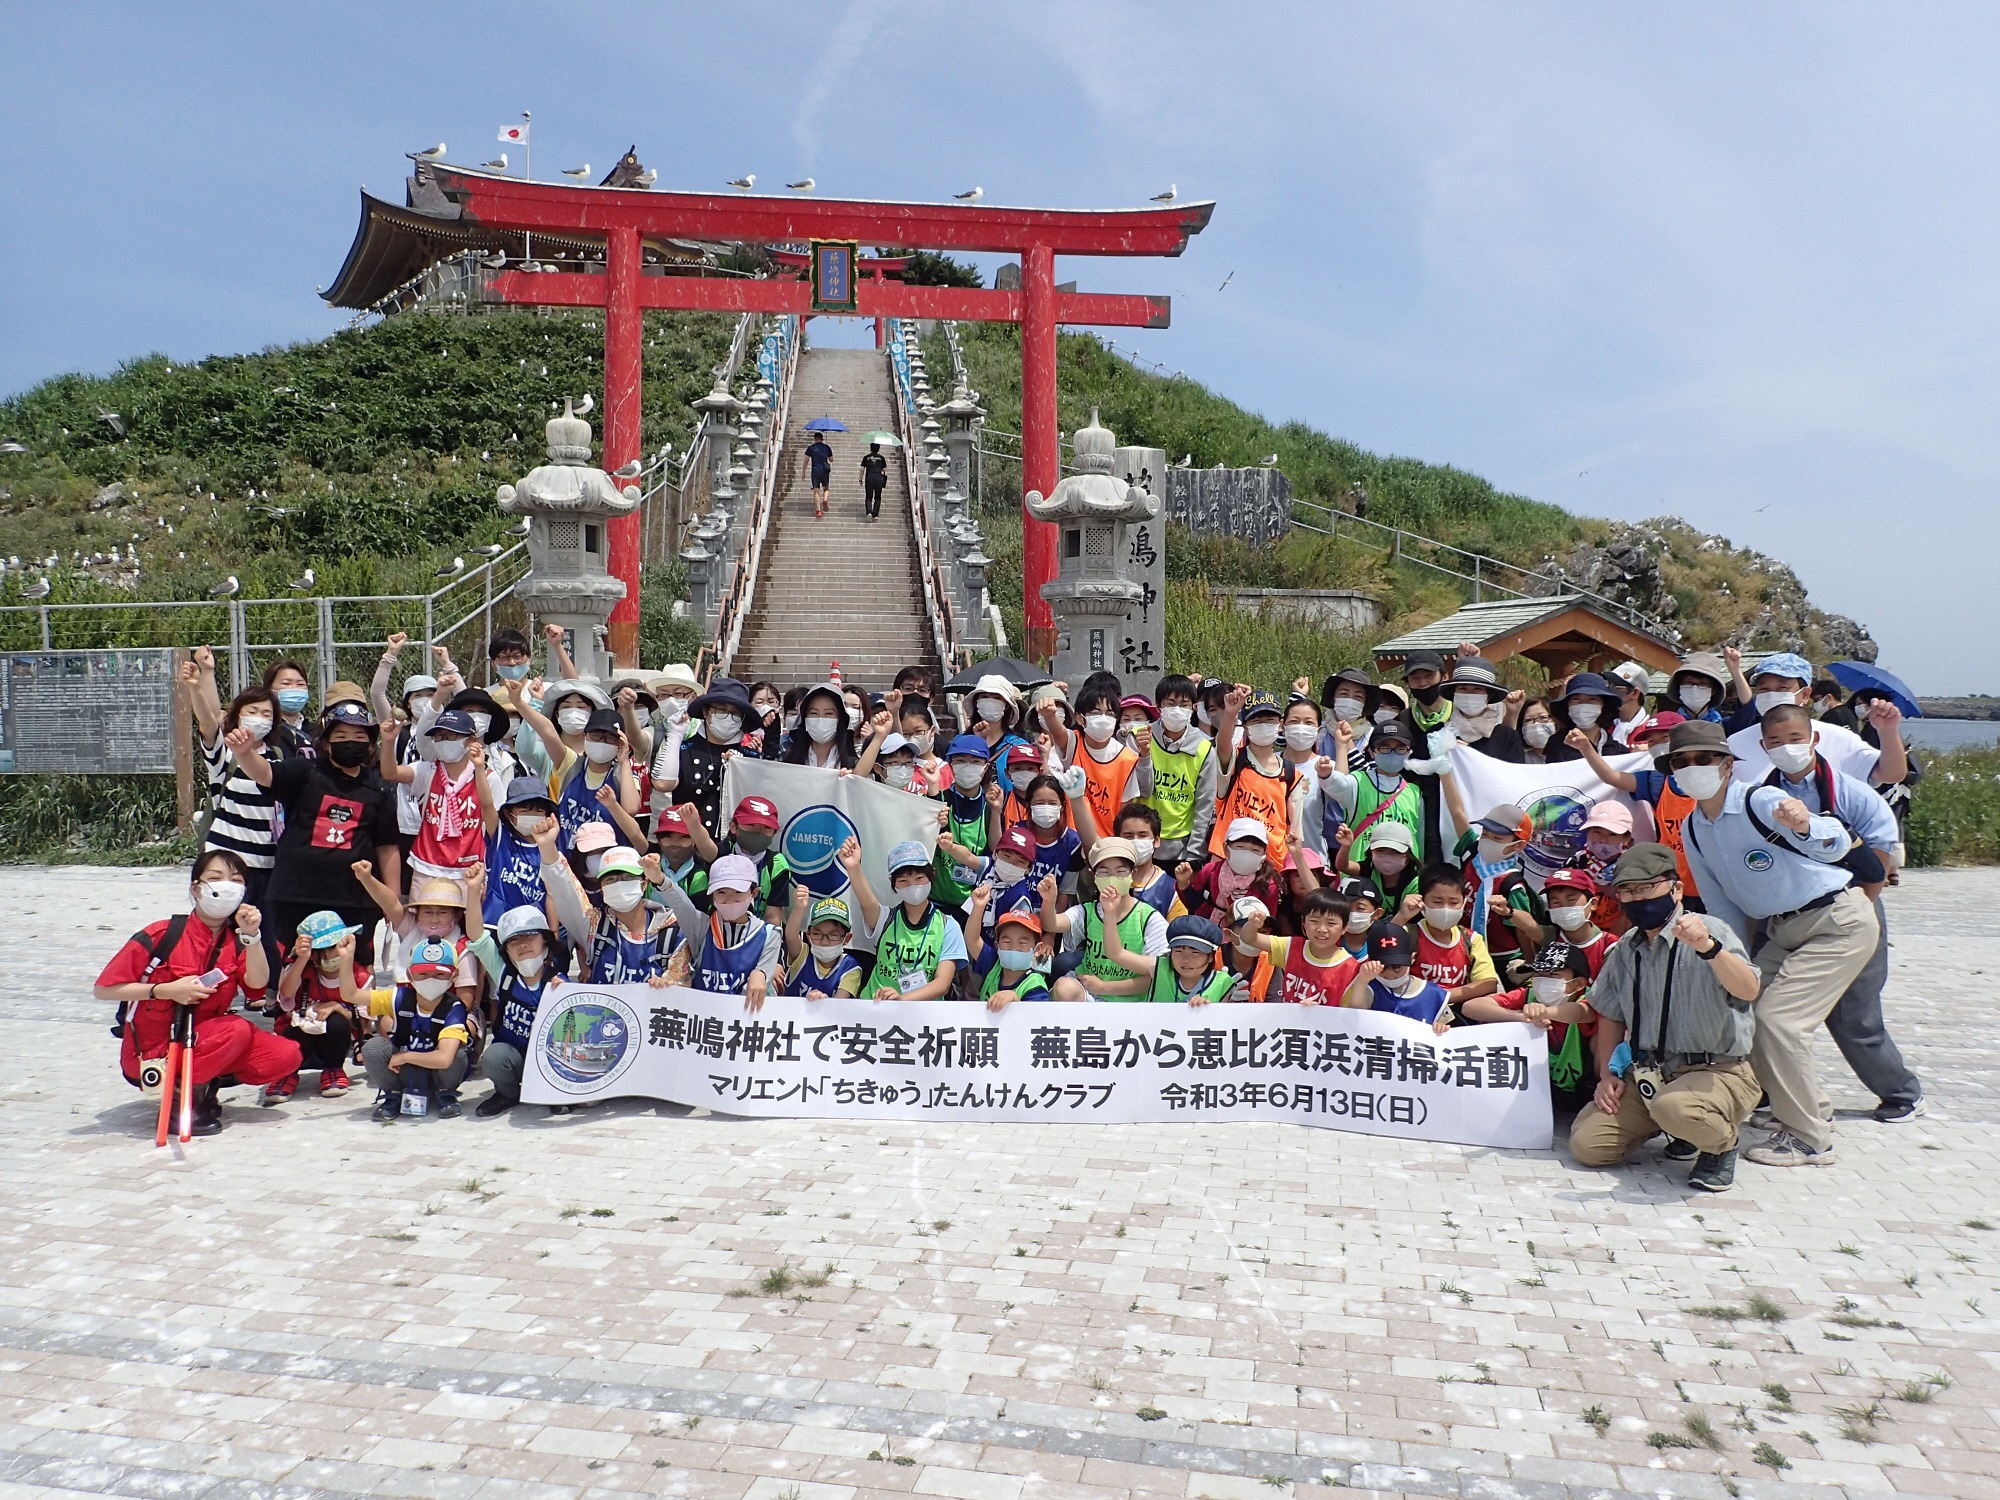 蕪島神社鳥居前で横断幕を広げ集合写真に写る87人のメンバー